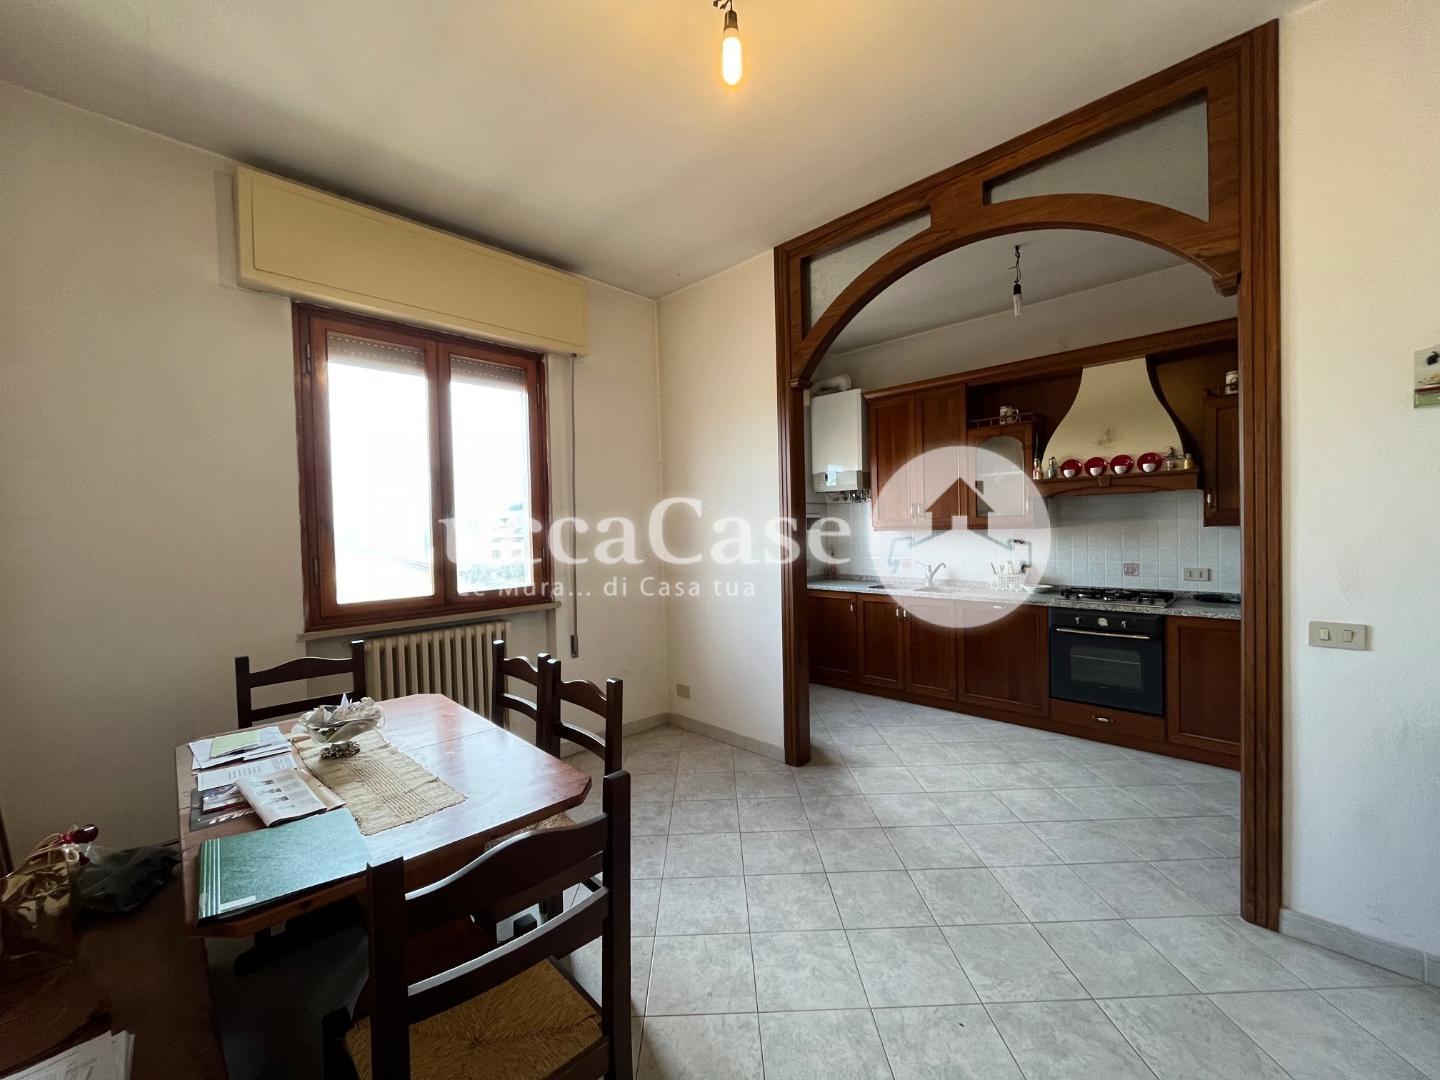 Appartamento in vendita a Capannori, 4 locali, prezzo € 165.000 | PortaleAgenzieImmobiliari.it